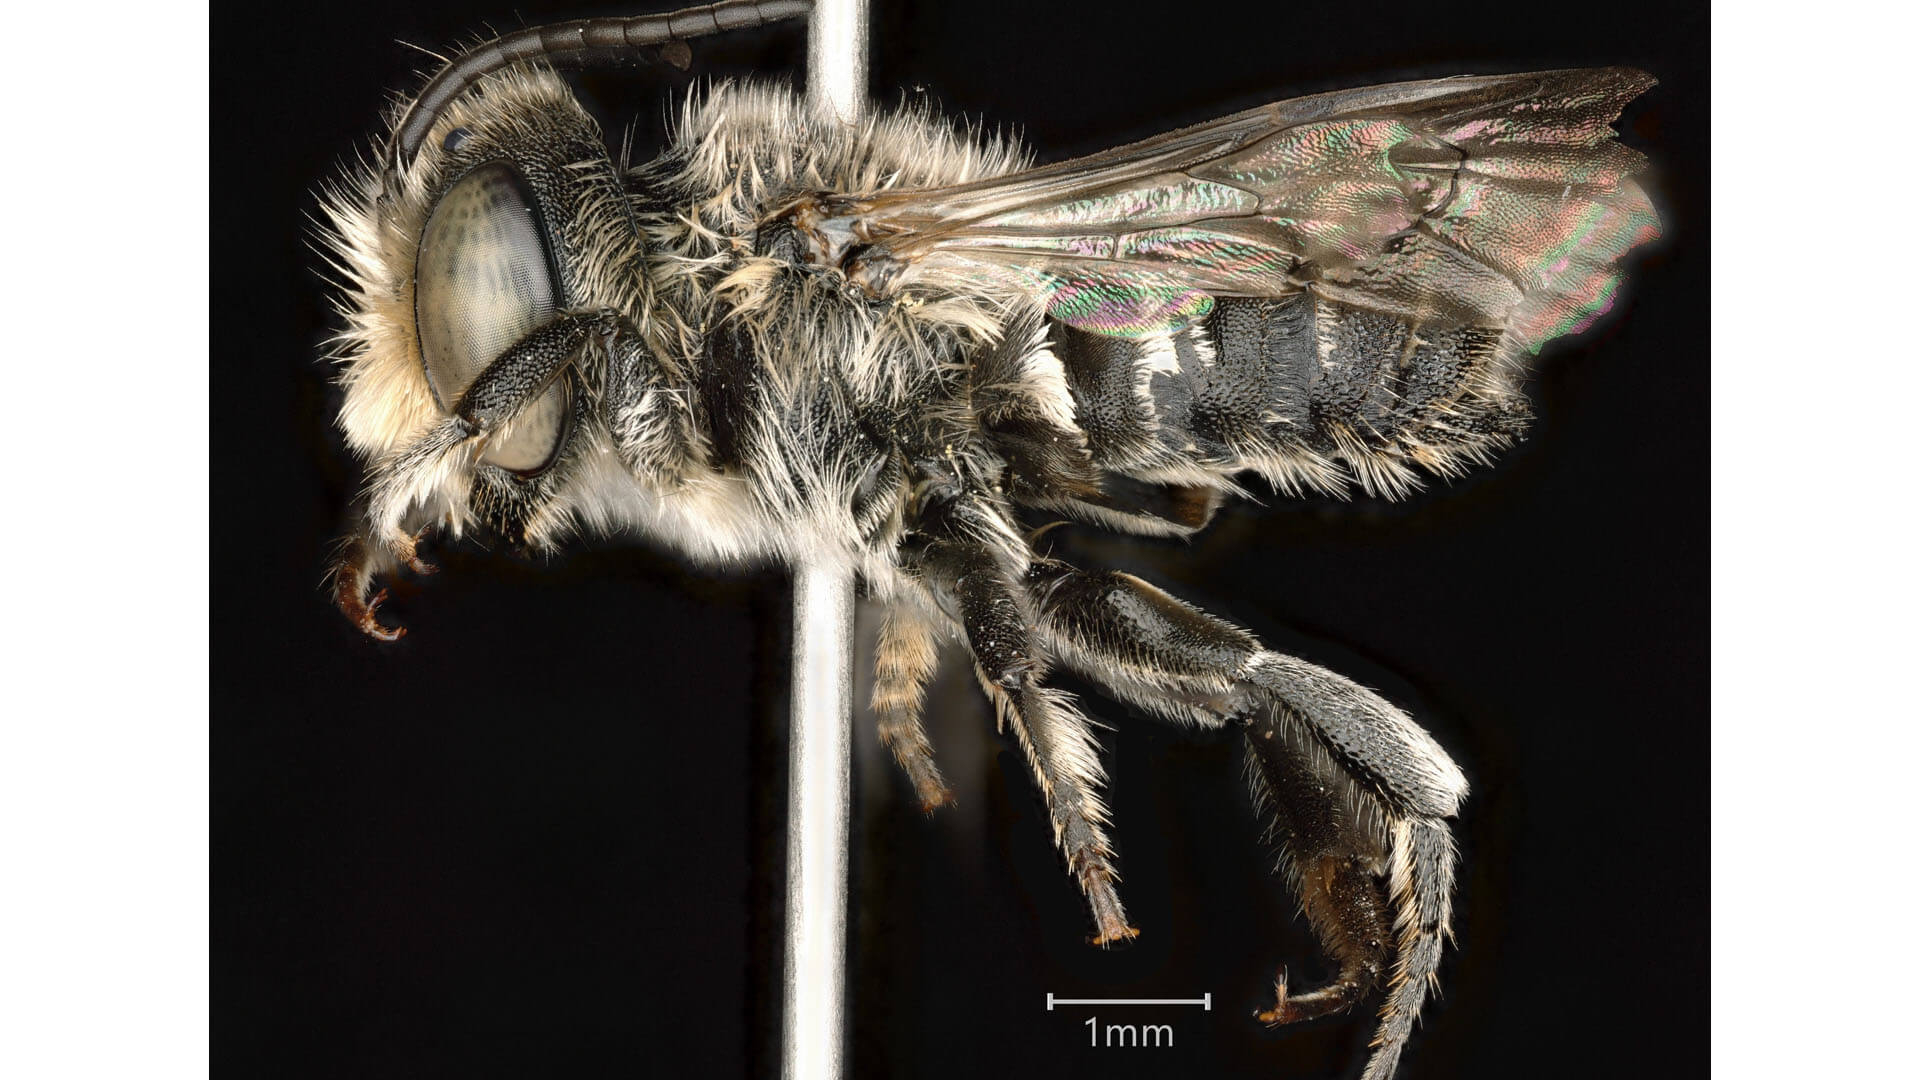 Photograph of Megachile rotundata.